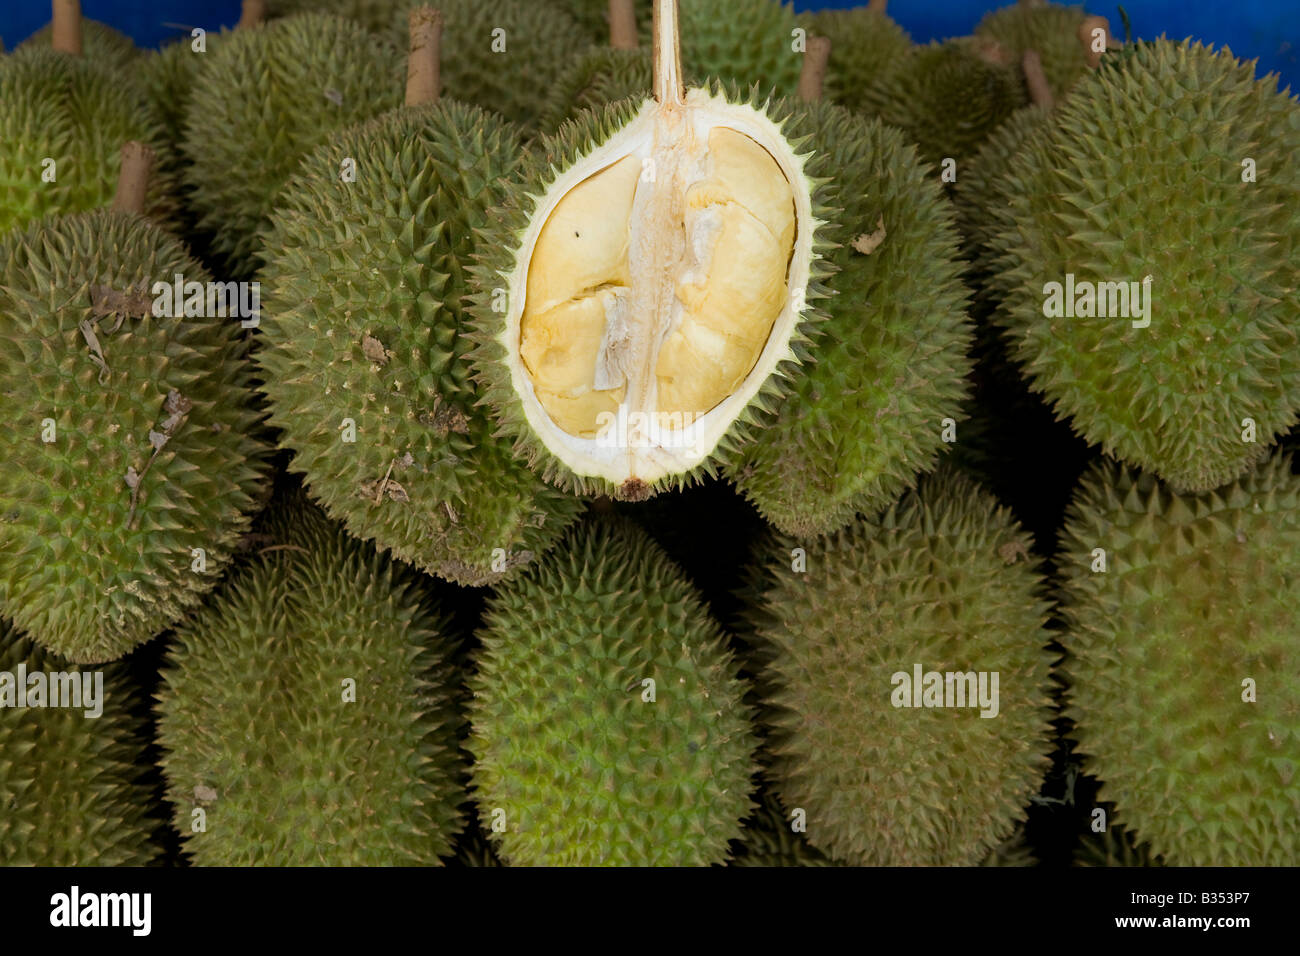 Durian übel riechenden schmackhaftes Obst aus Asien-Vietnam-Vietnam aufgeschnitten, die segmentierte essbaren innen zu zeigen Stockfoto